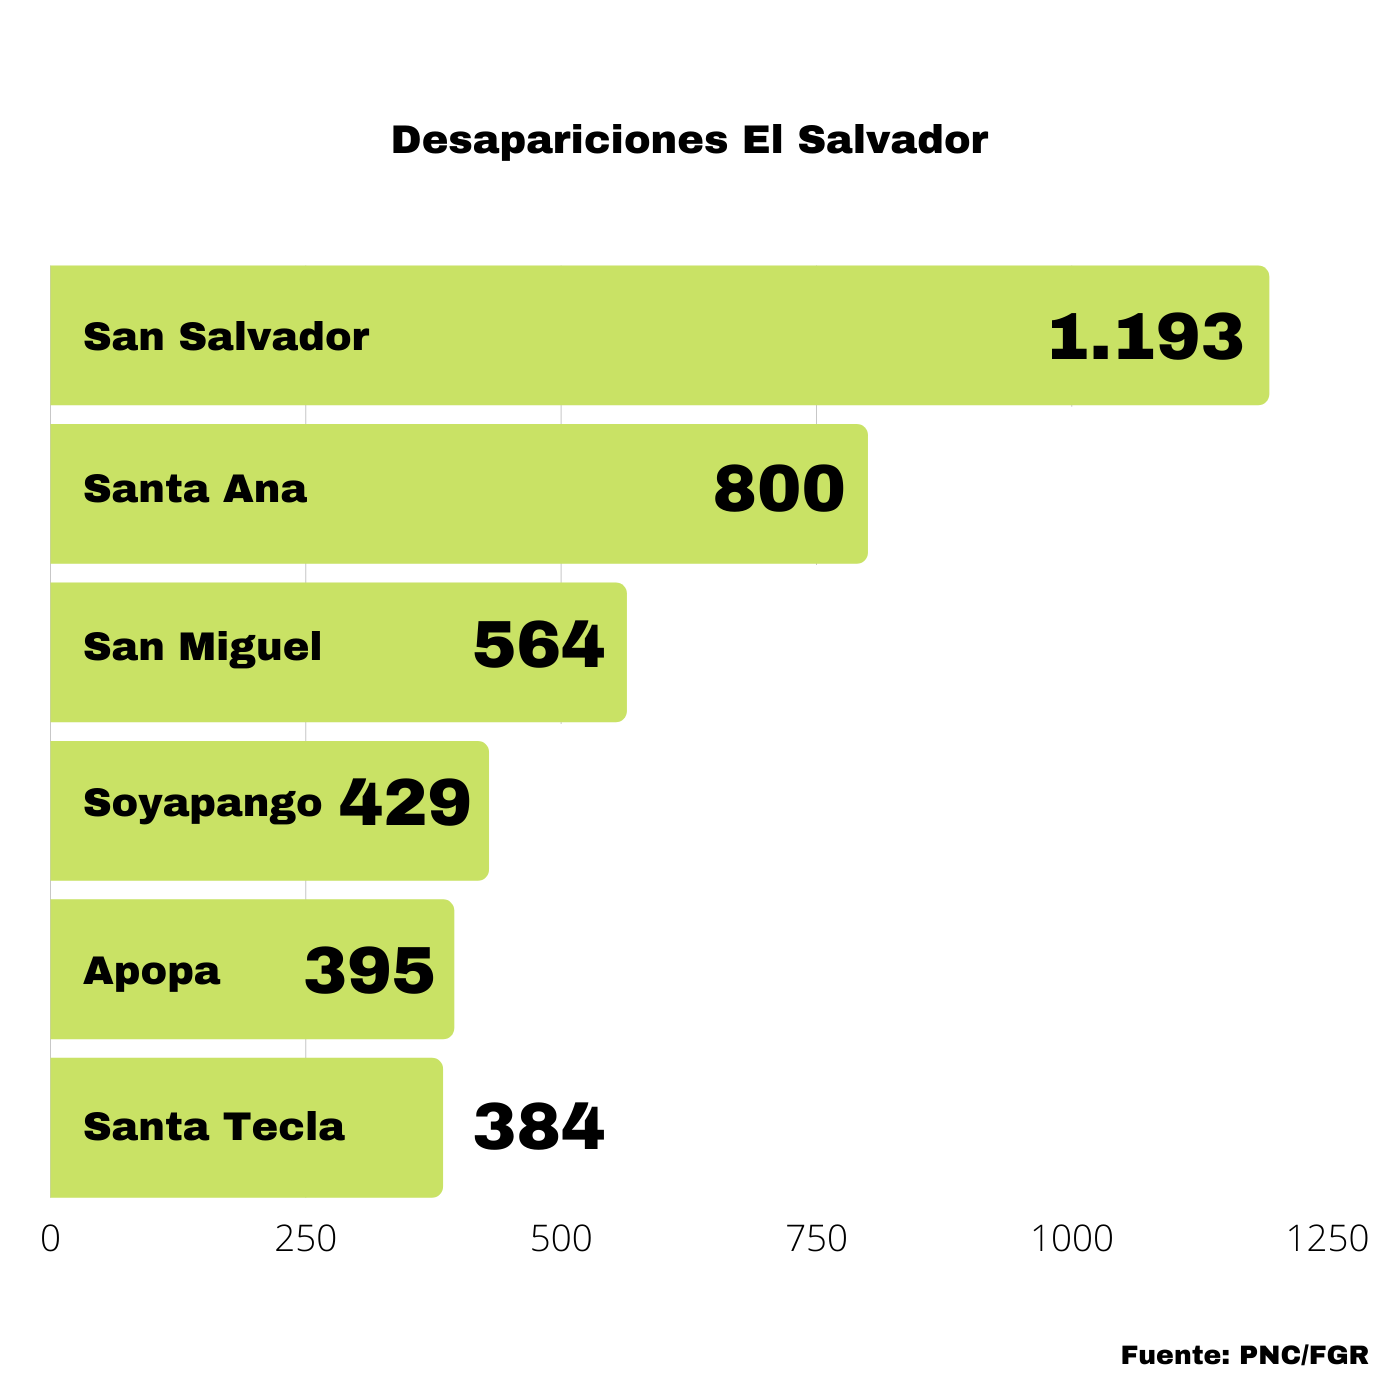 El Bajo Índice De Desapariciones En Santa Tecla. Desapariciones El Salvador. Infografía. Roberto d'Aubuisson. 2021